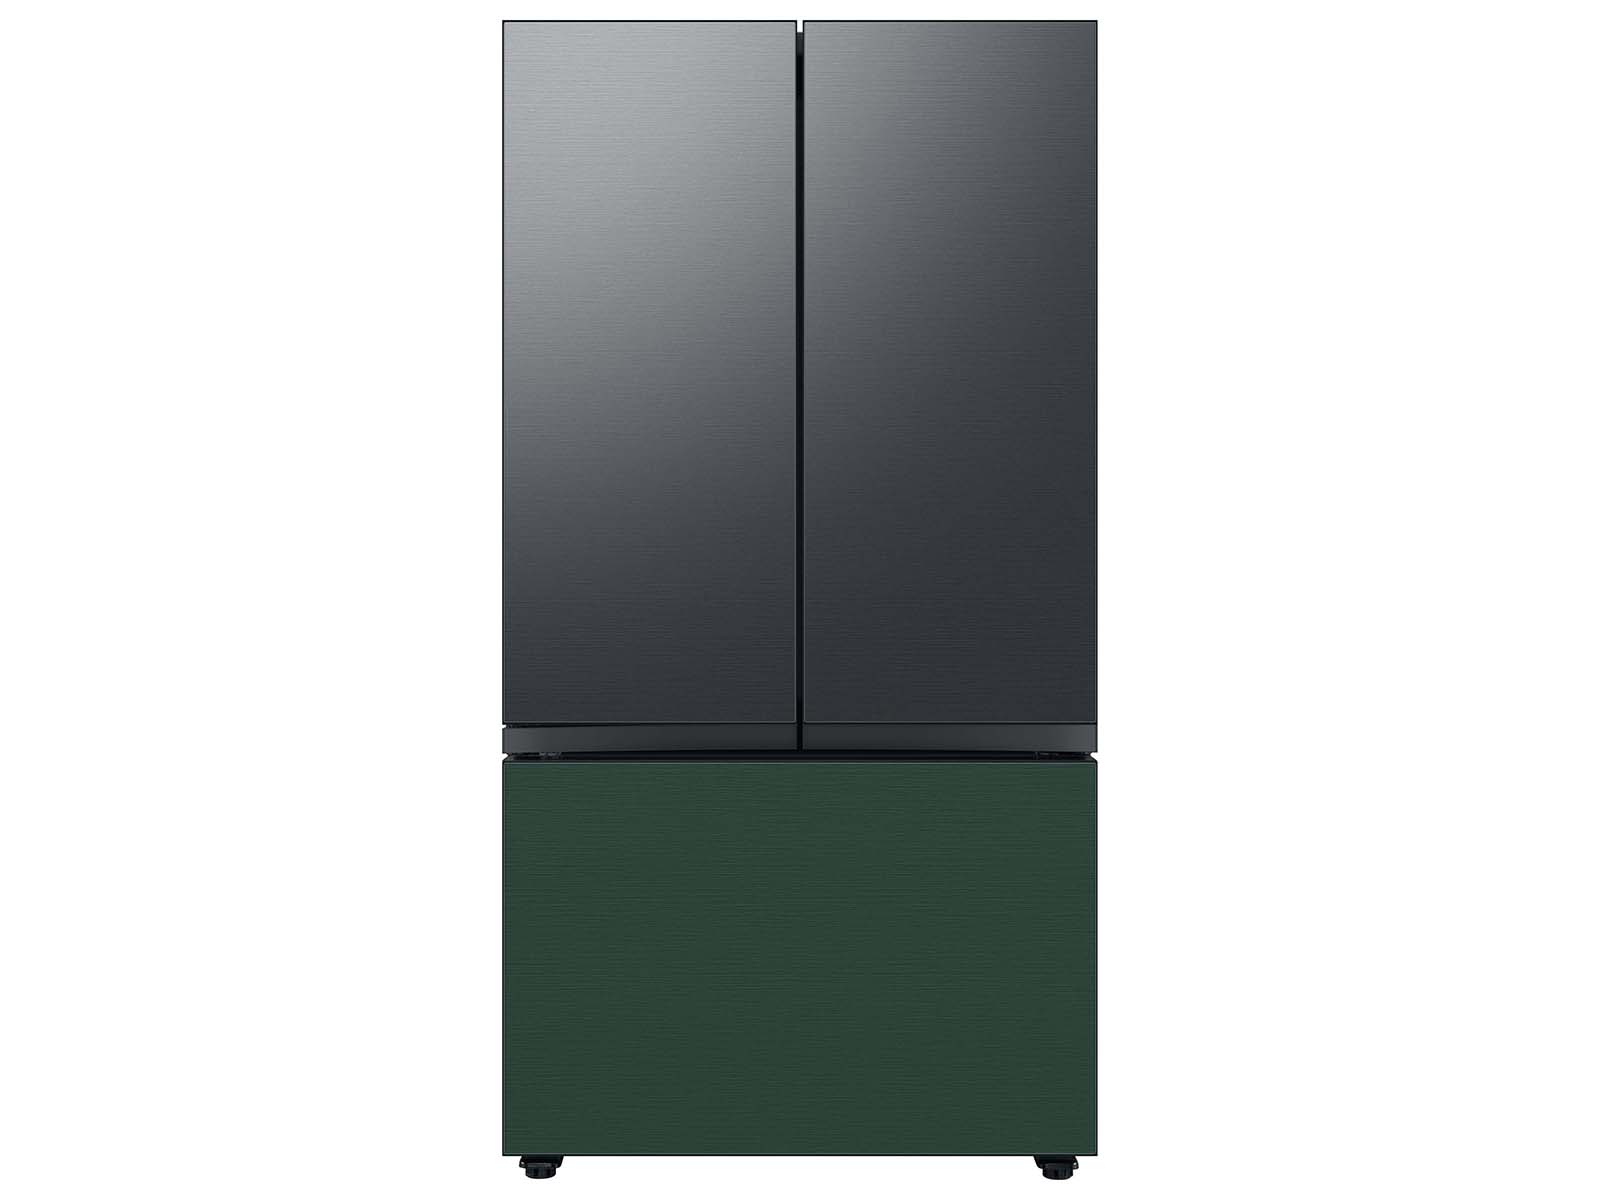 Thumbnail image of Bespoke 3-Door French Door Refrigerator Panel in Matte Black Steel - Top Panel